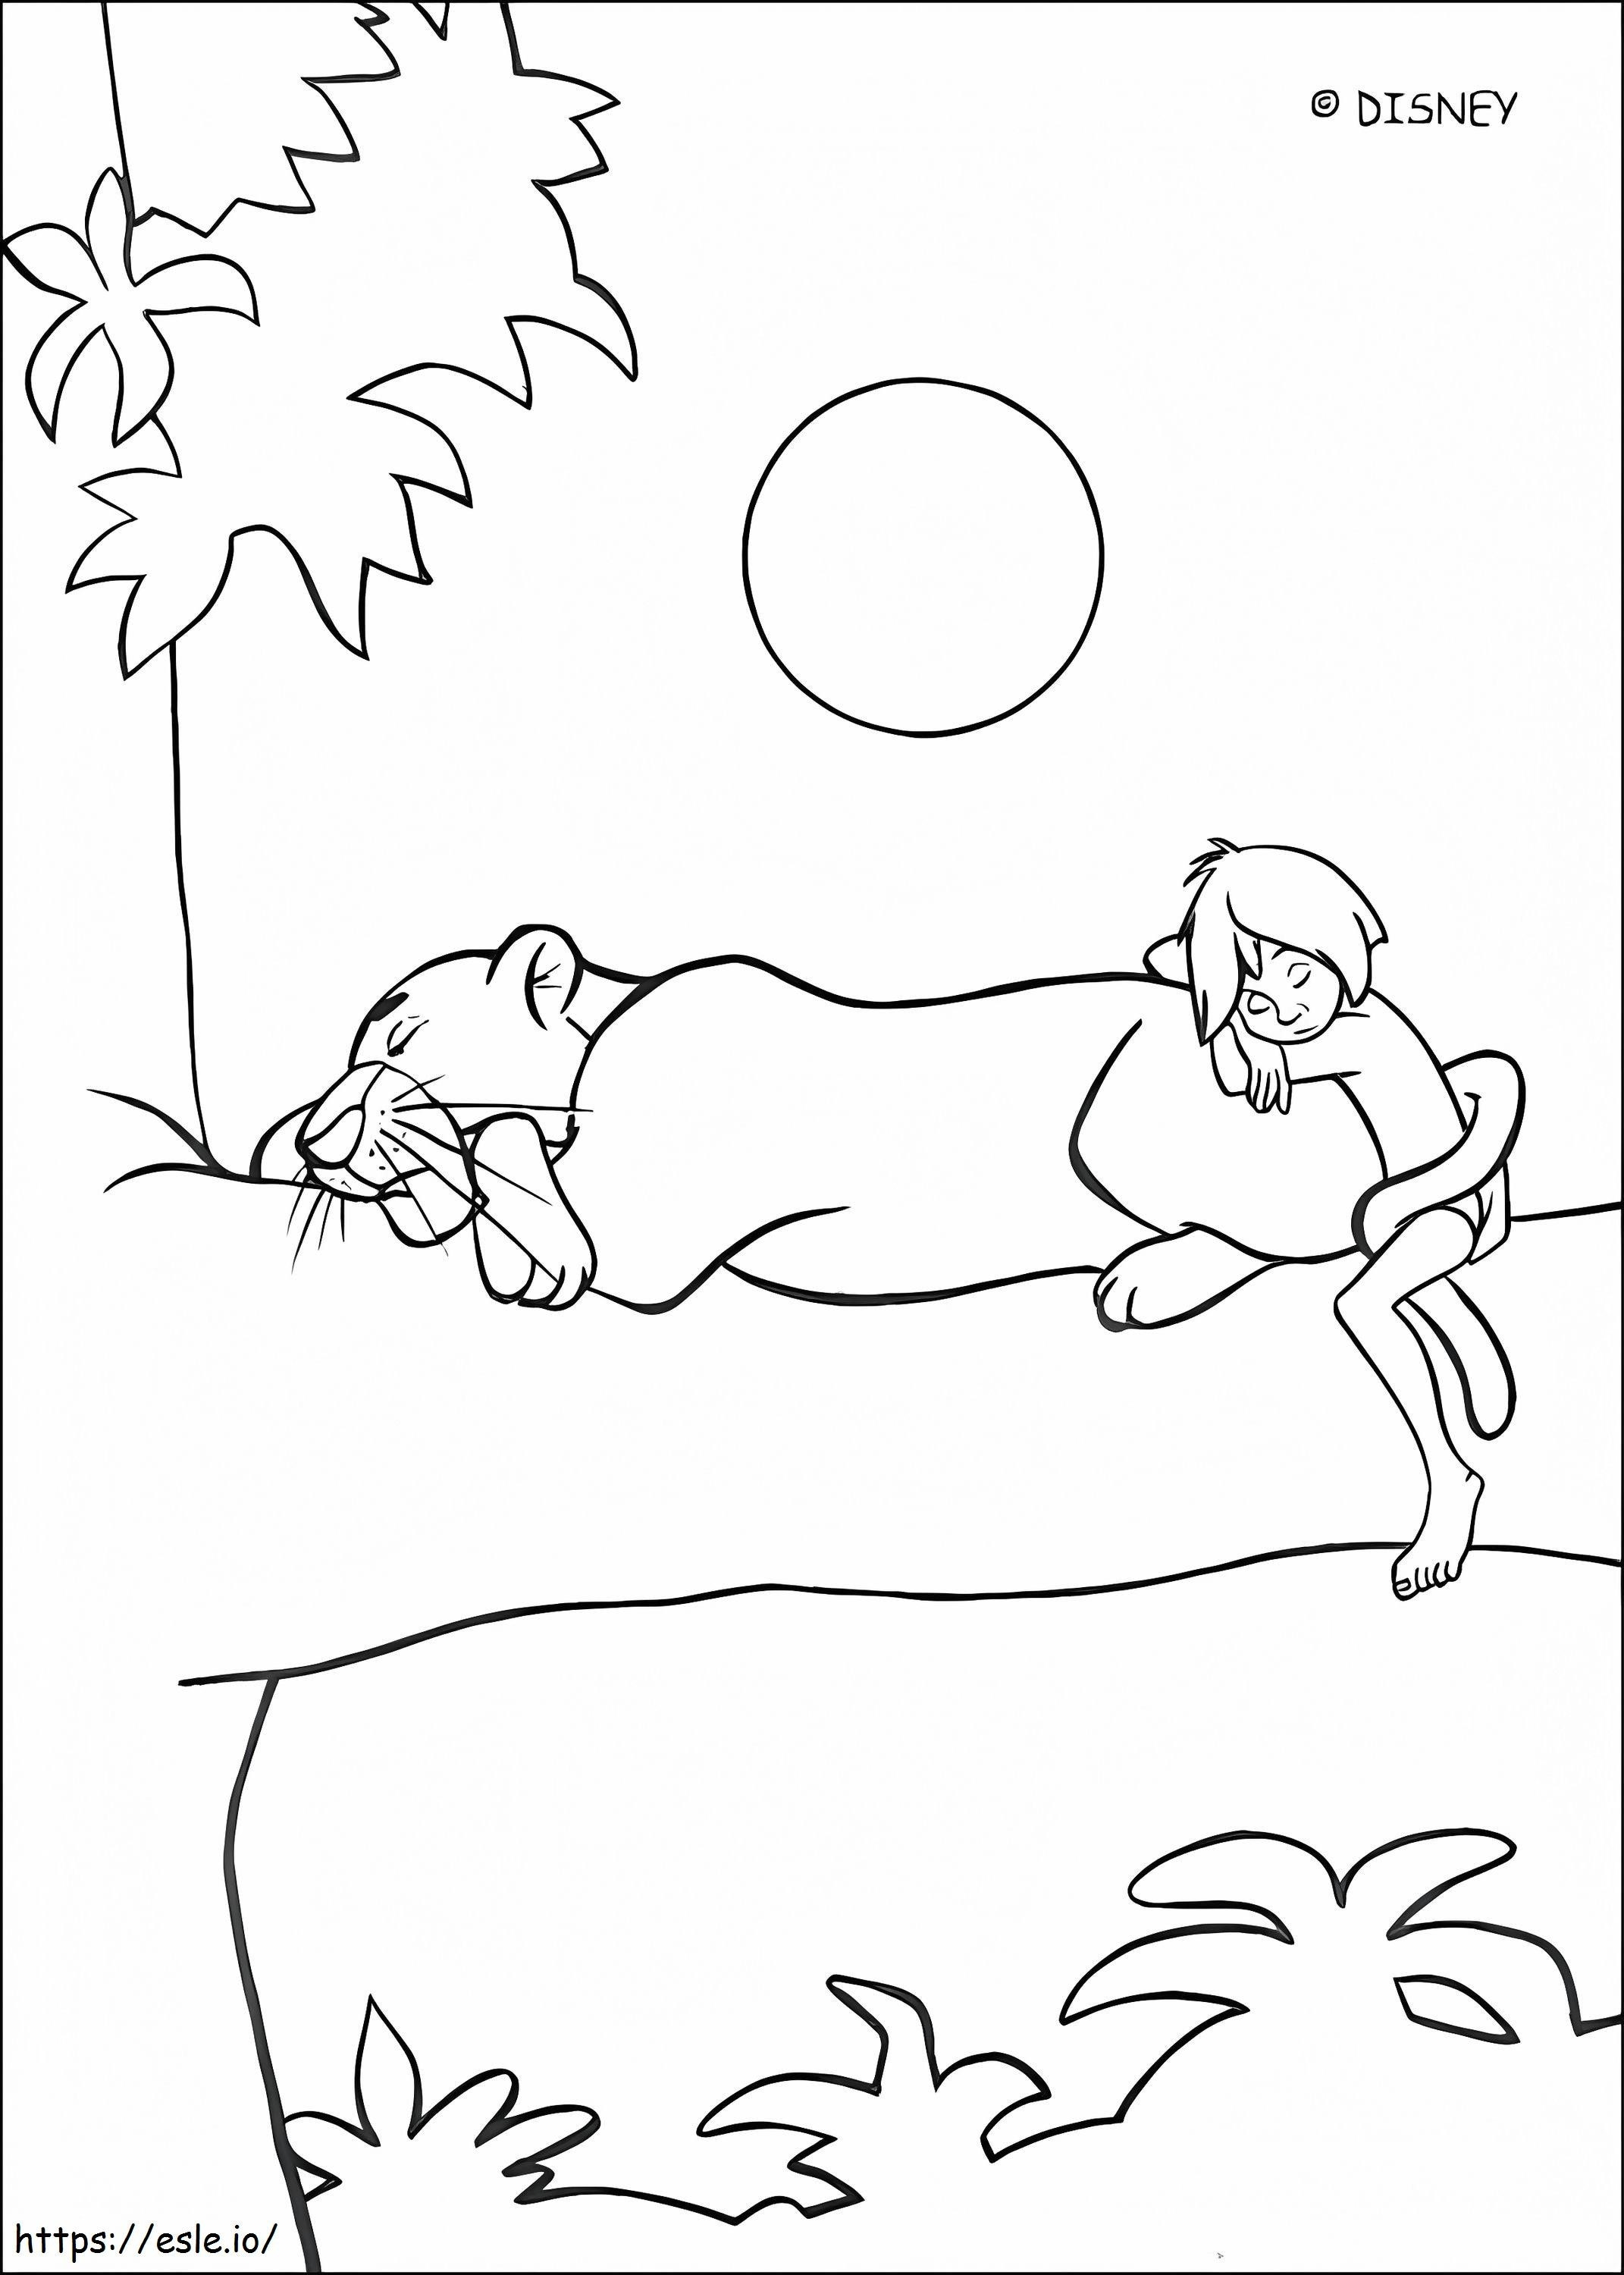 Mowgli con Bagheera durmiendo para colorear